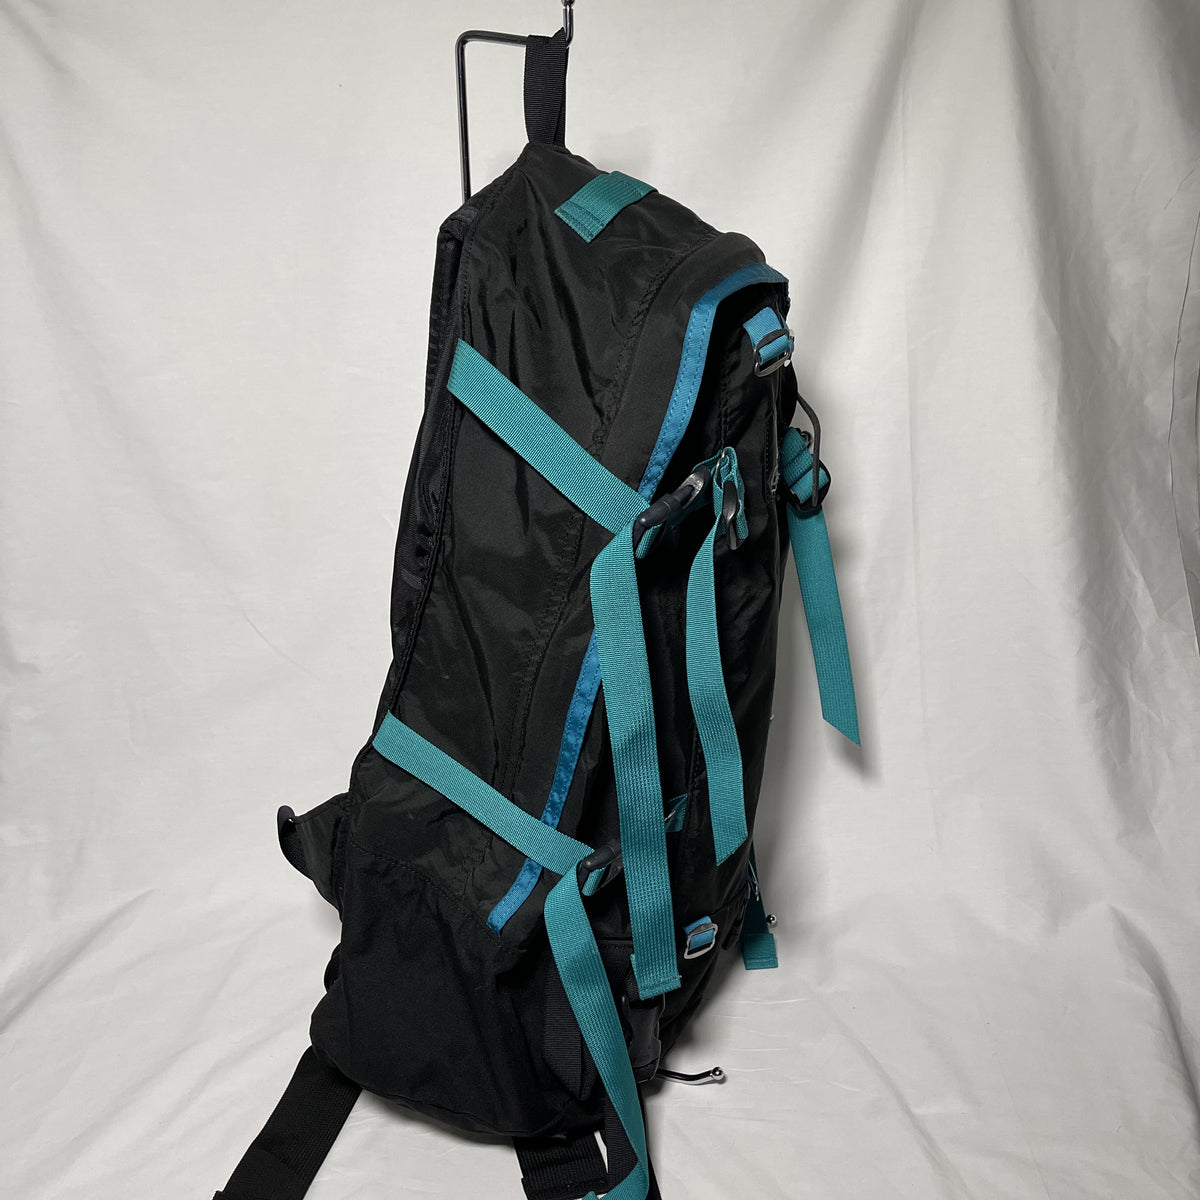 Gregory Day & Half Backpack (33L) - Black x Blue 黑x藍 Day & Half 33L 背囊